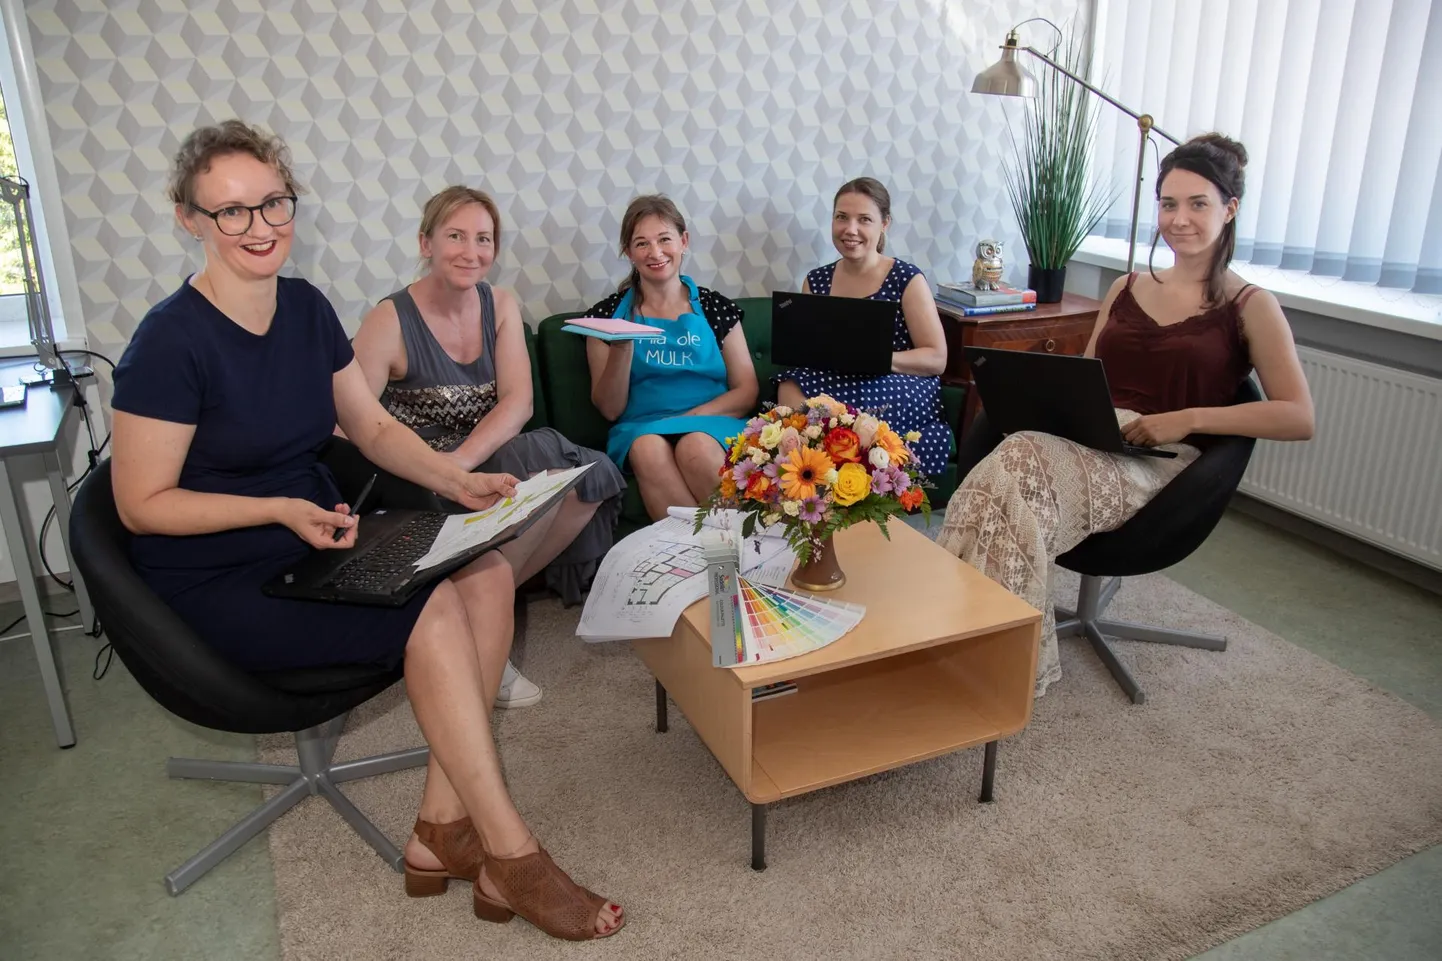 Viis naist (vasakult) Liis Märtson, Eva Jassik, Angela Süldre, Airika Lainoja ja Juulia Juhkam panid aluse grupile "Naisettevõtjad Mulgi vallas", millega liitus Facebookis kiirelt üle poolesaja naise. Nüüd plaanitakse omavahel näost näkku kokku saada. 